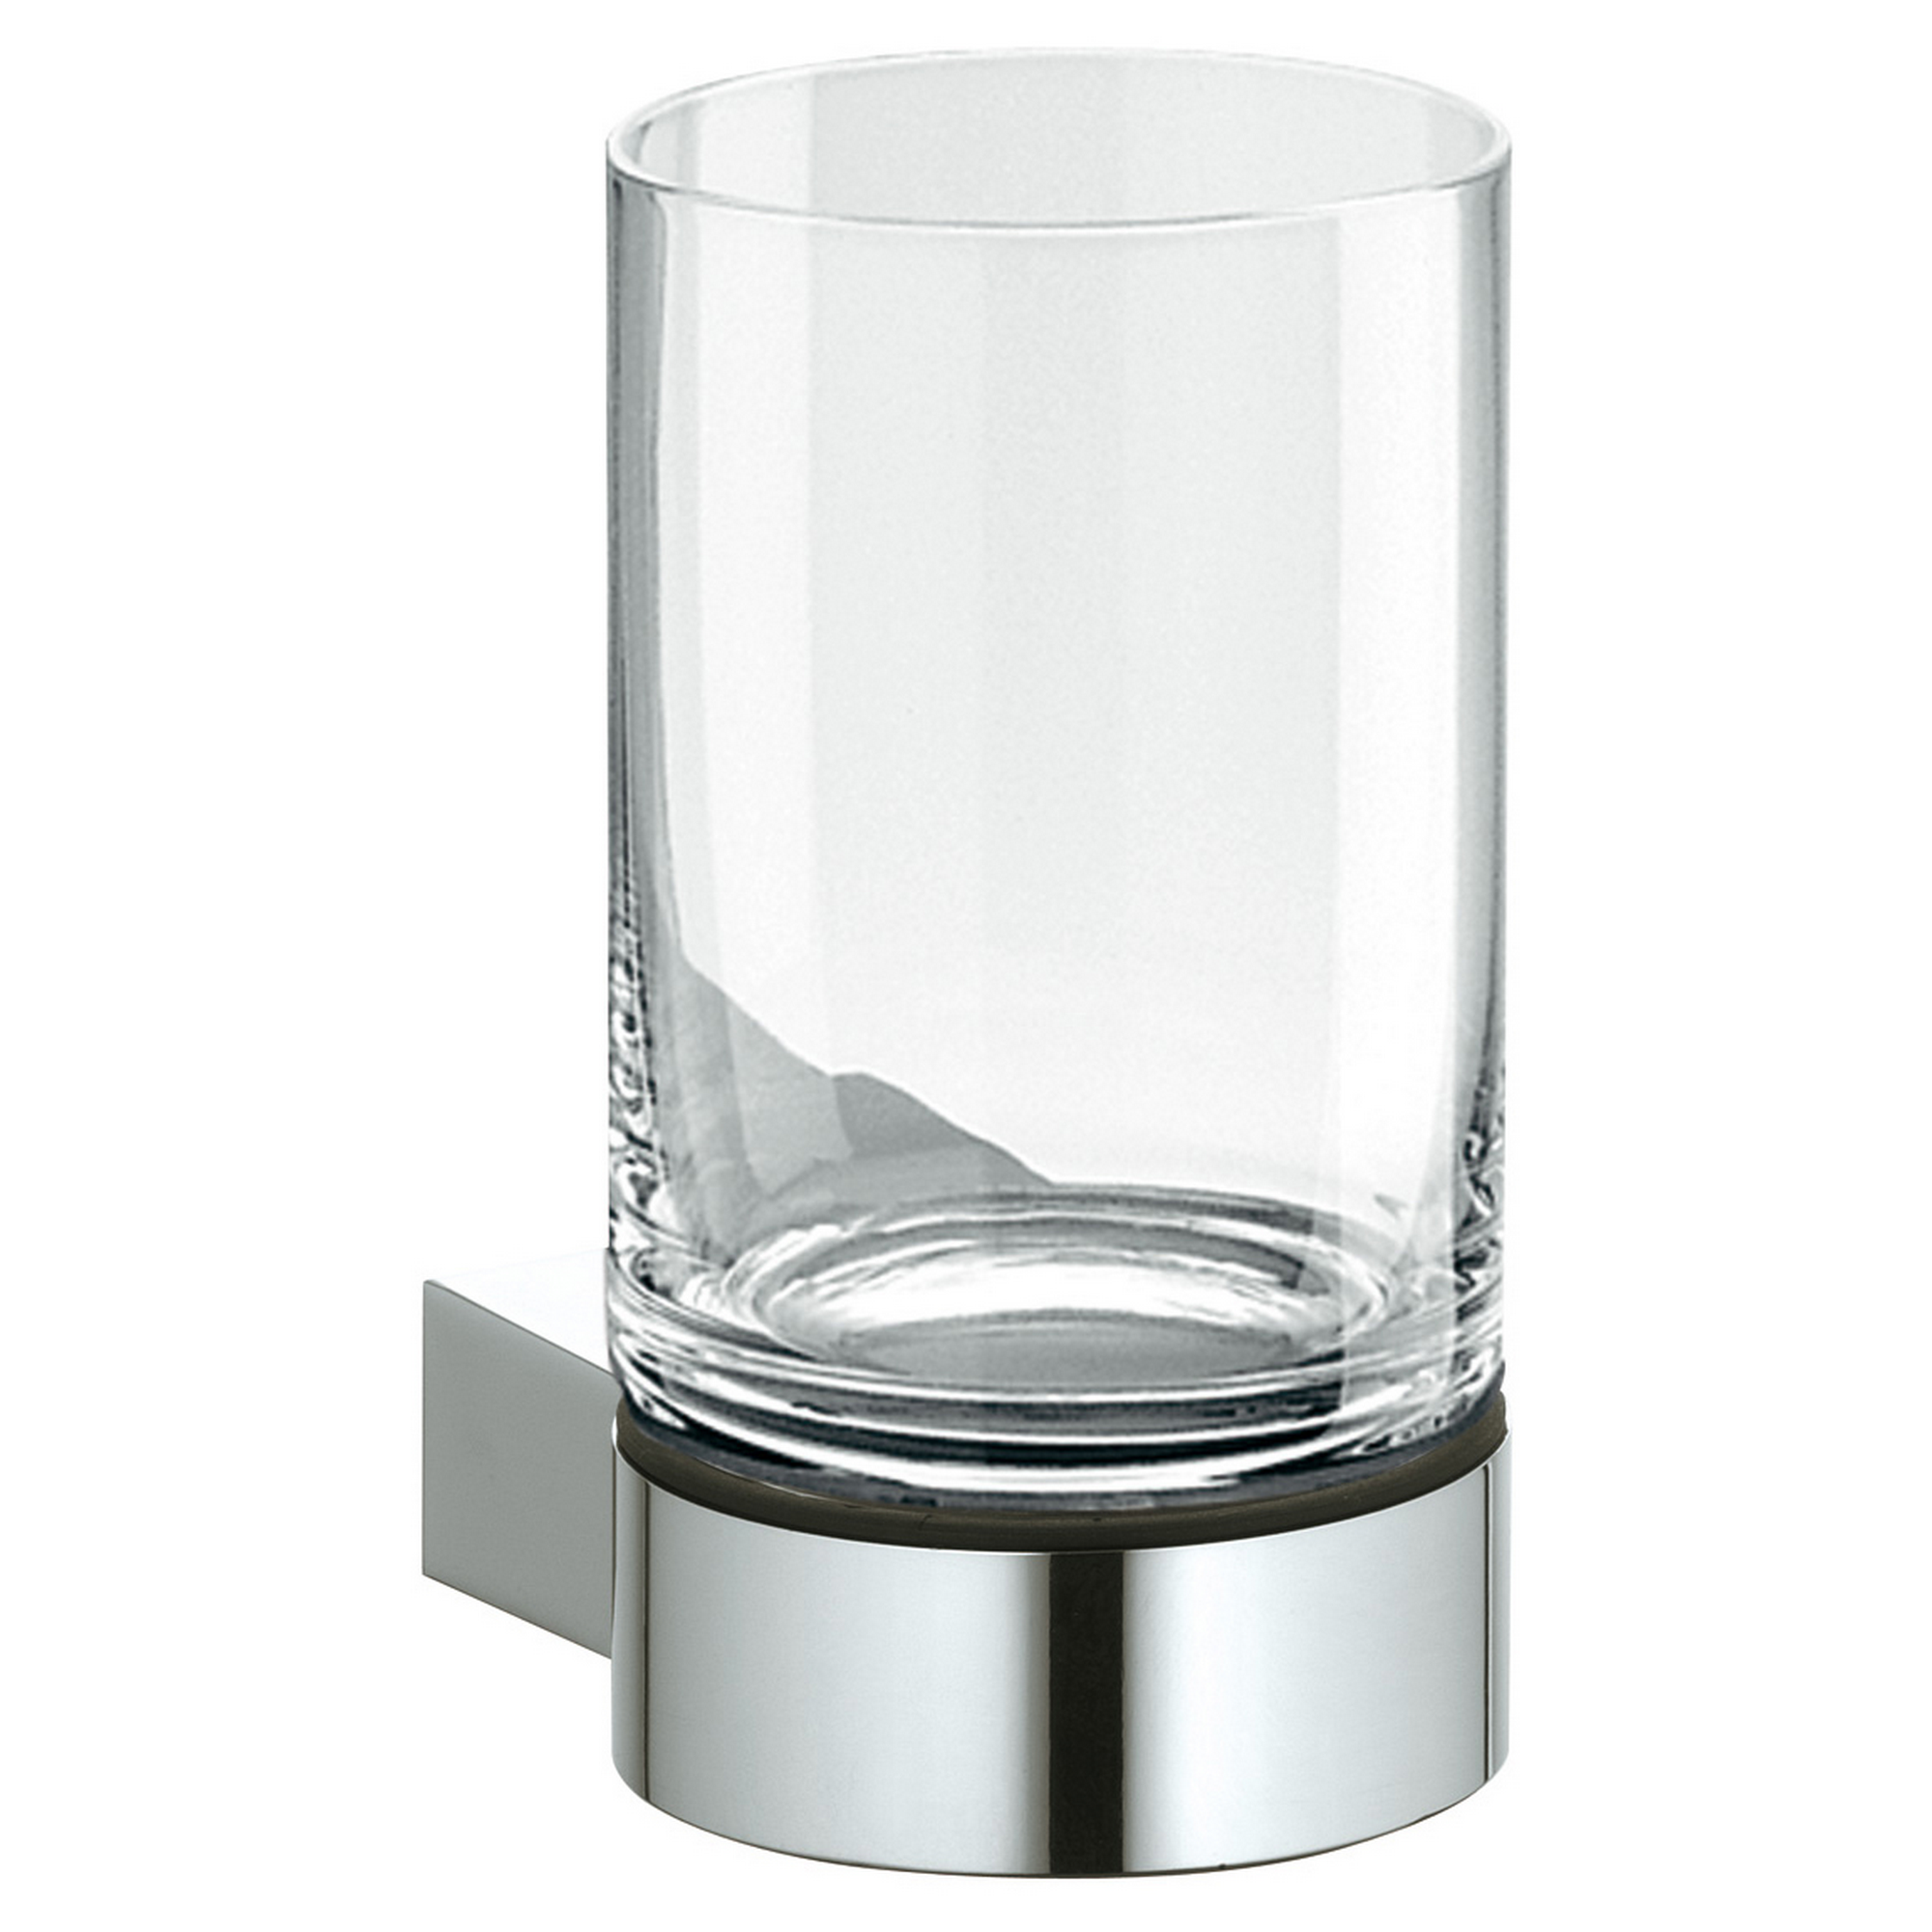 Glashalter 'Plan' mit Echtkristall-Glas, verchromt + product picture